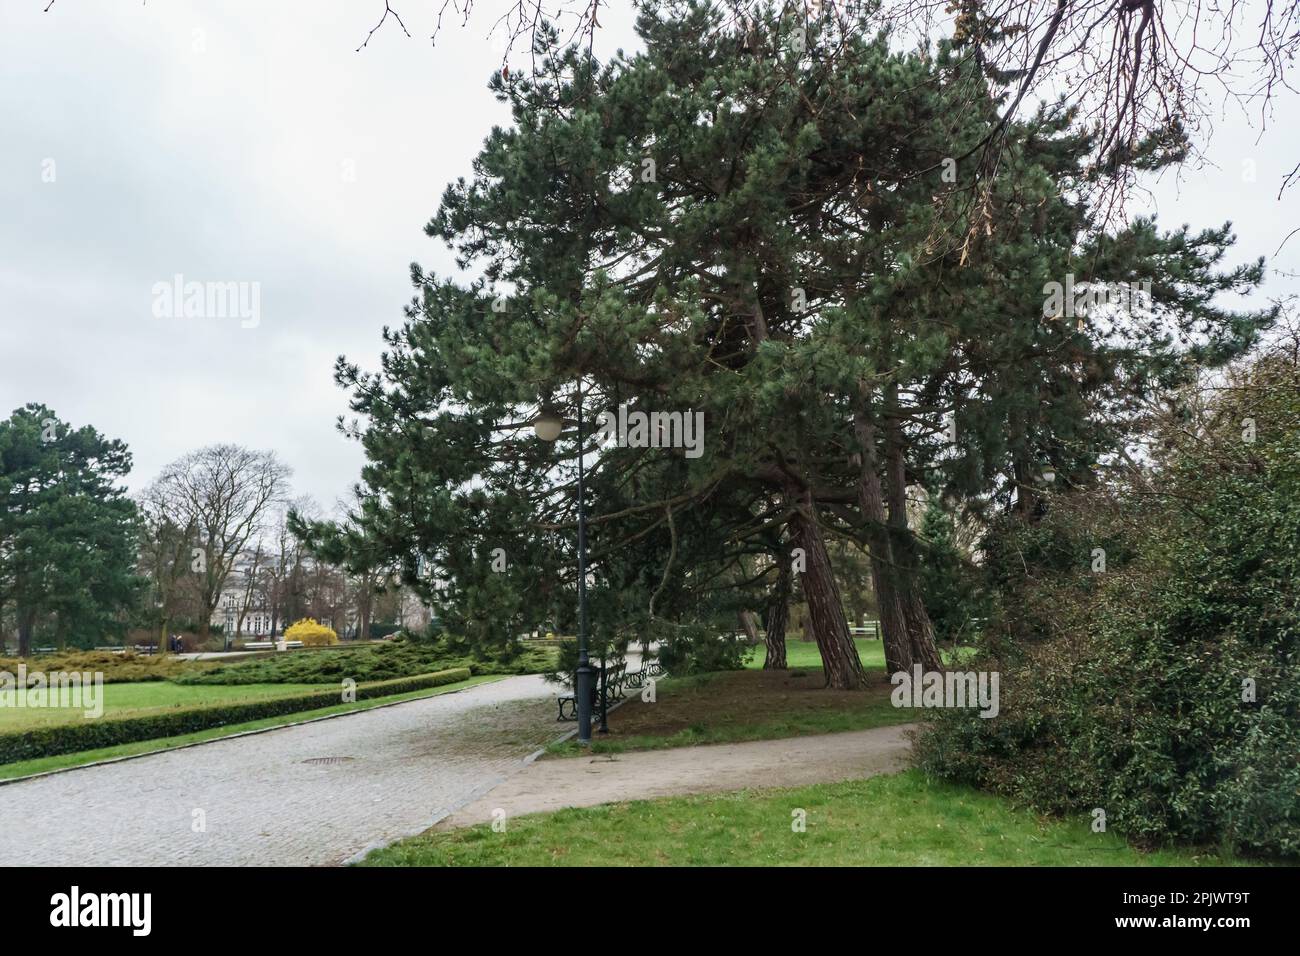 trees in Ujazdowski Park, Warsaw, Poland Stock Photo